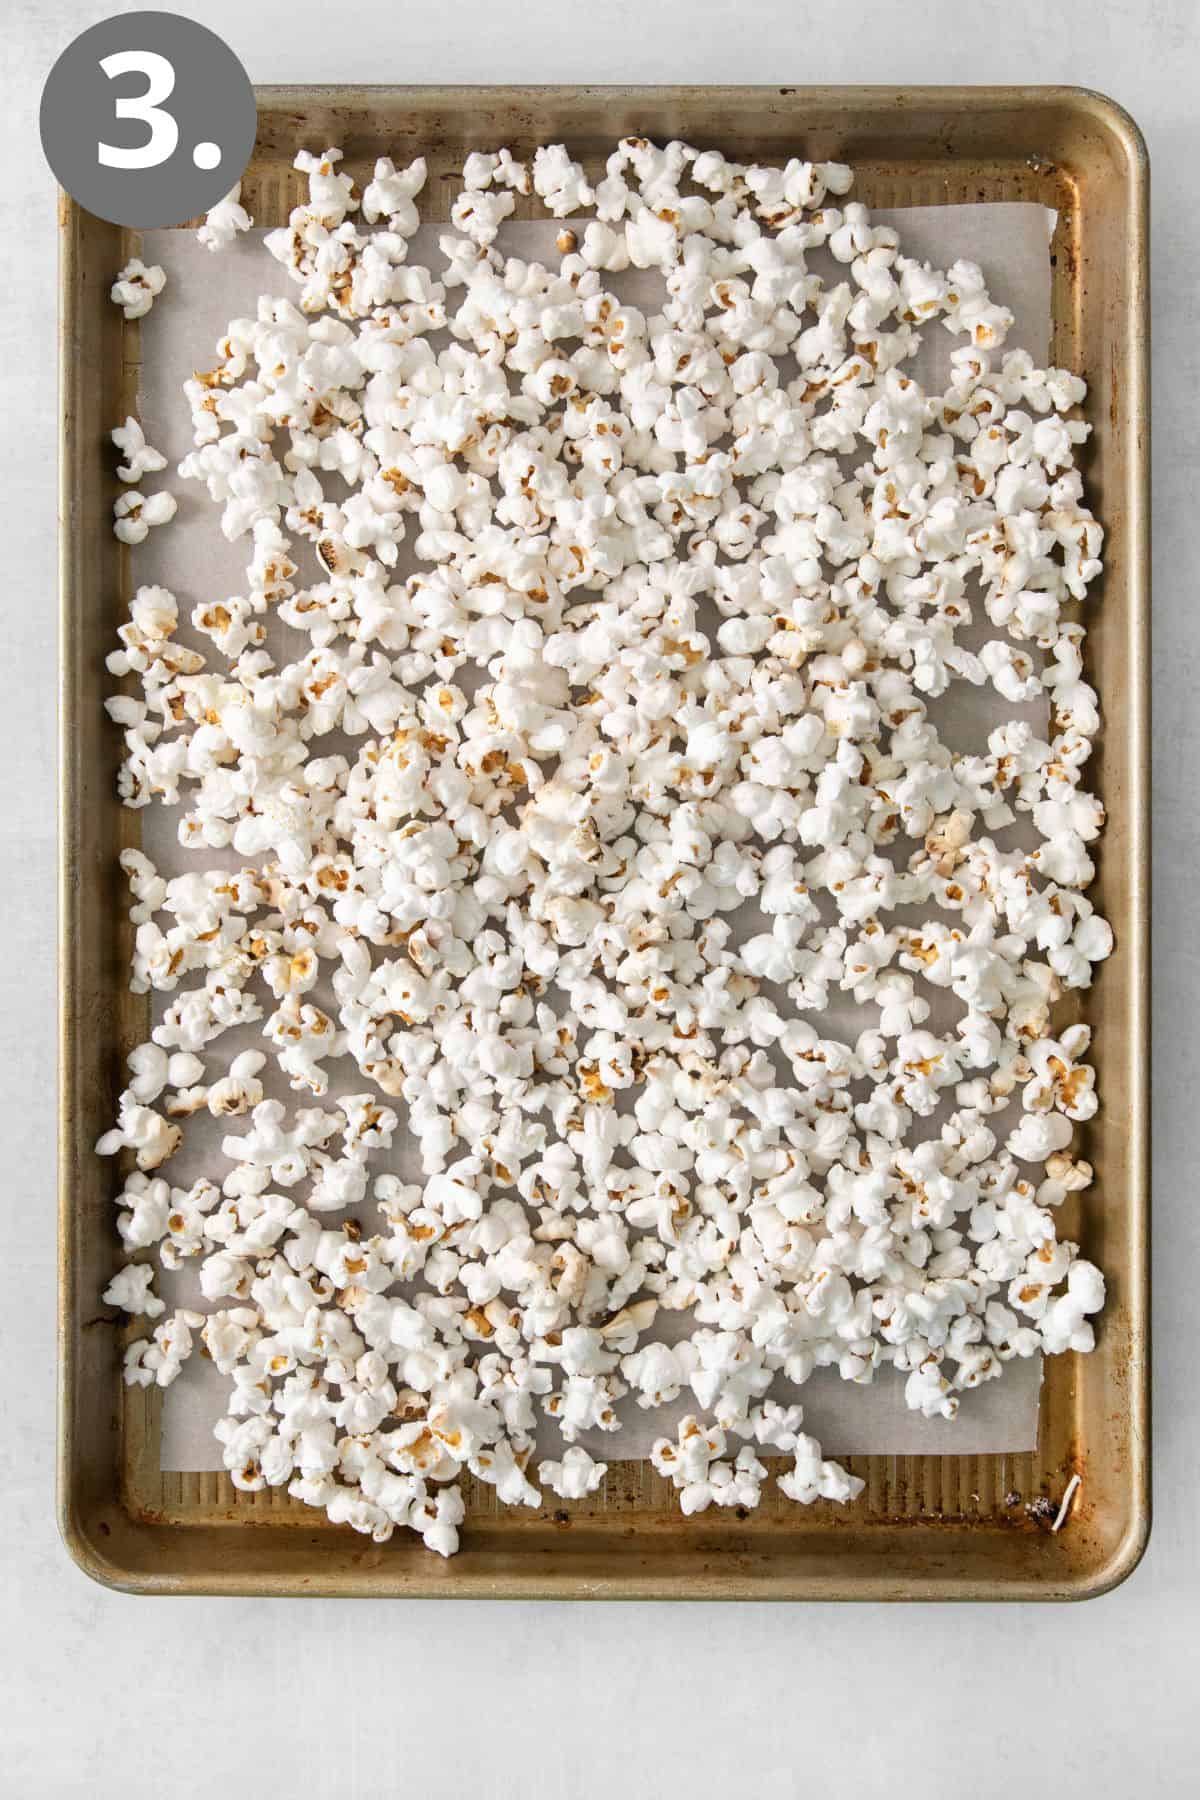 Popcorn on a baking tray